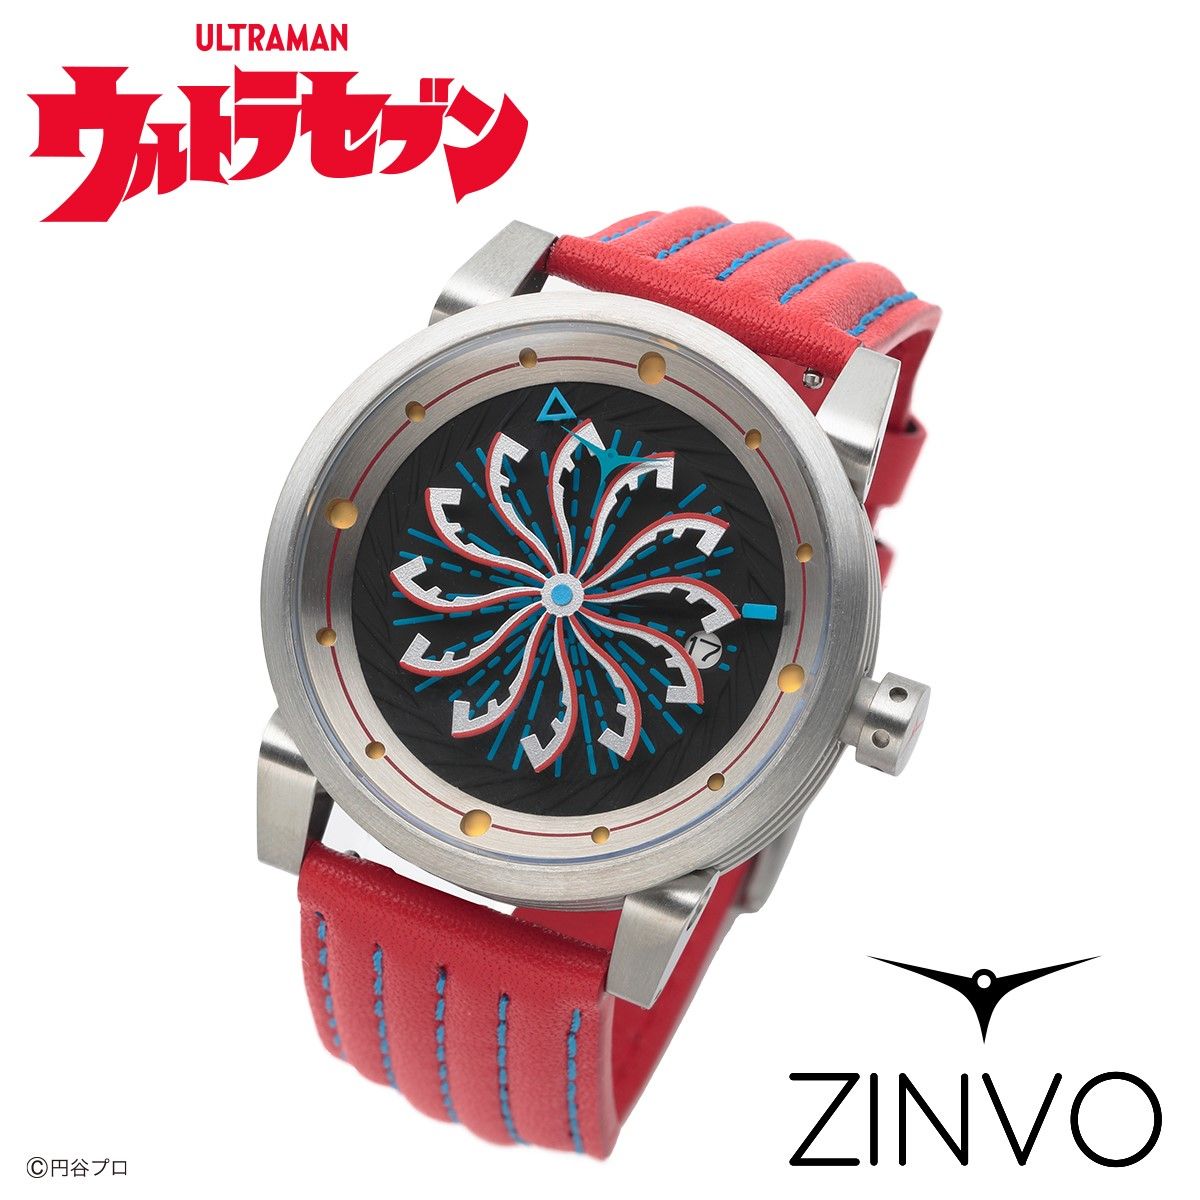 ウルトラセブン ZINVO 腕時計ーULTRASEVEN Limited Editionー ウルトラセブン バンダイナムコグループ公式通販サイト